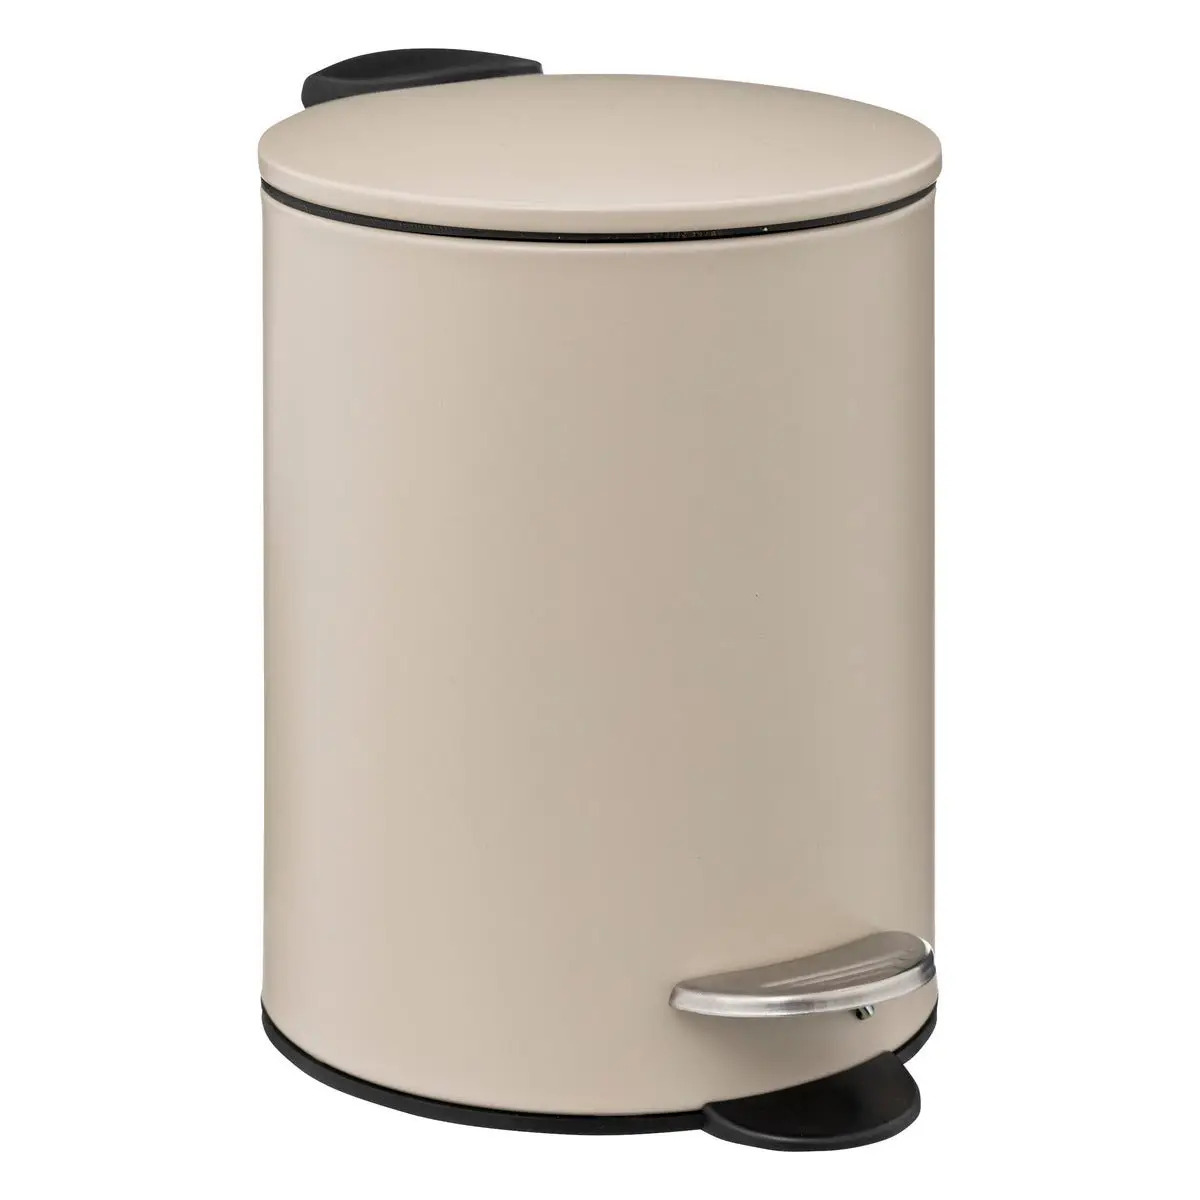 Prullenbak-pedaalemmer metaal beige 3 liter 16 x 25 cm Badkamer-toilet